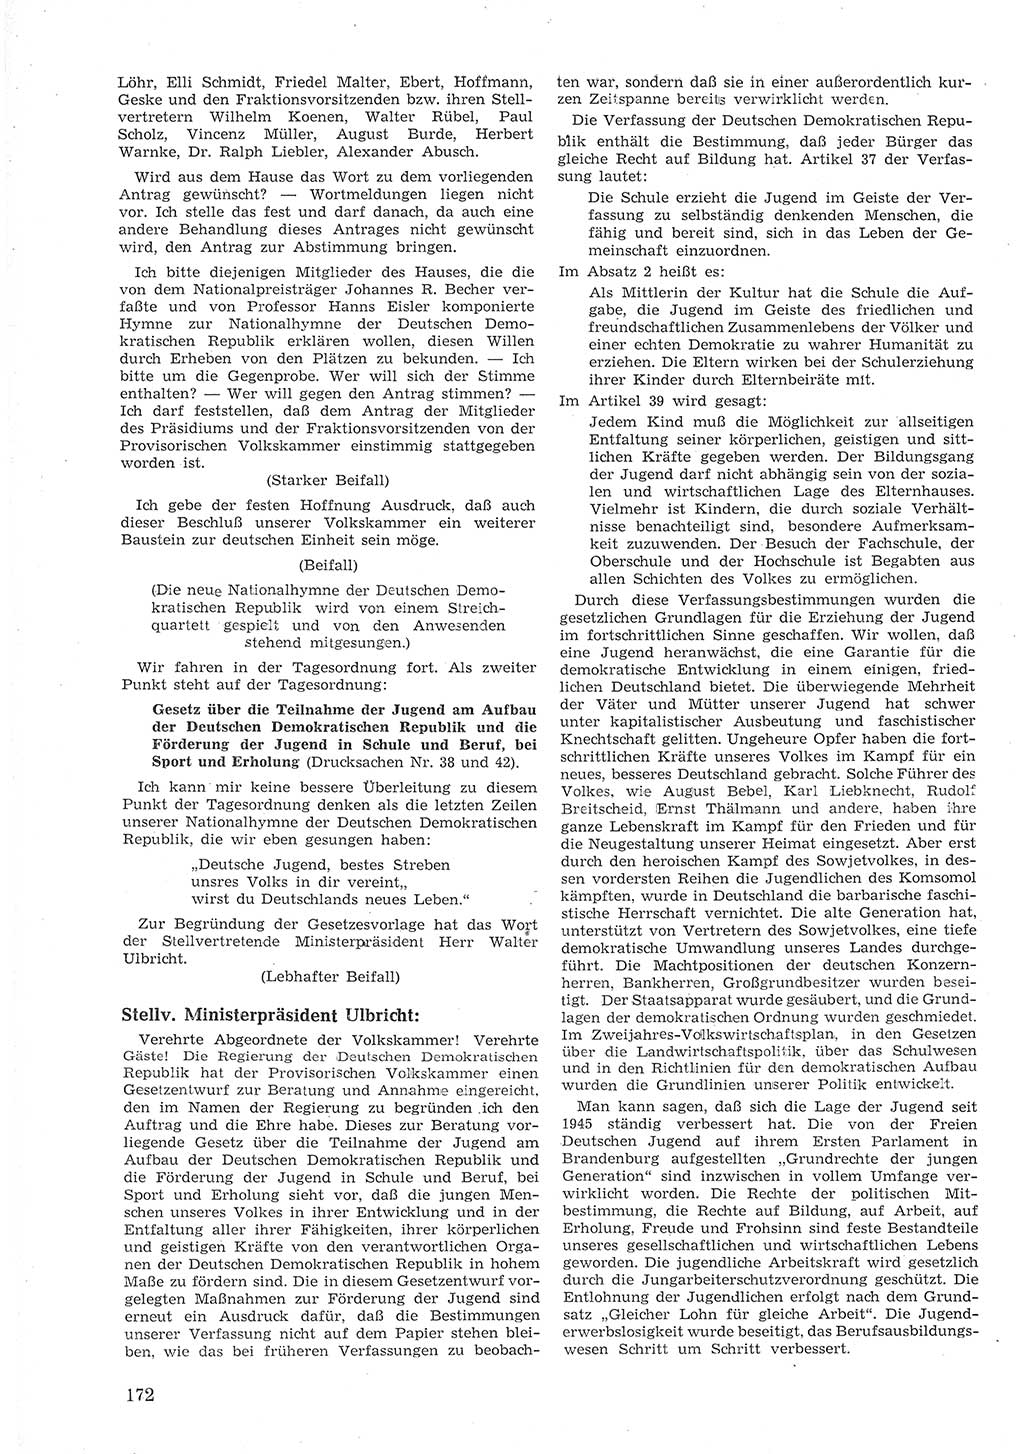 Provisorische Volkskammer (VK) der Deutschen Demokratischen Republik (DDR) 1949-1950, Dokument 184 (Prov. VK DDR 1949-1950, Dok. 184)